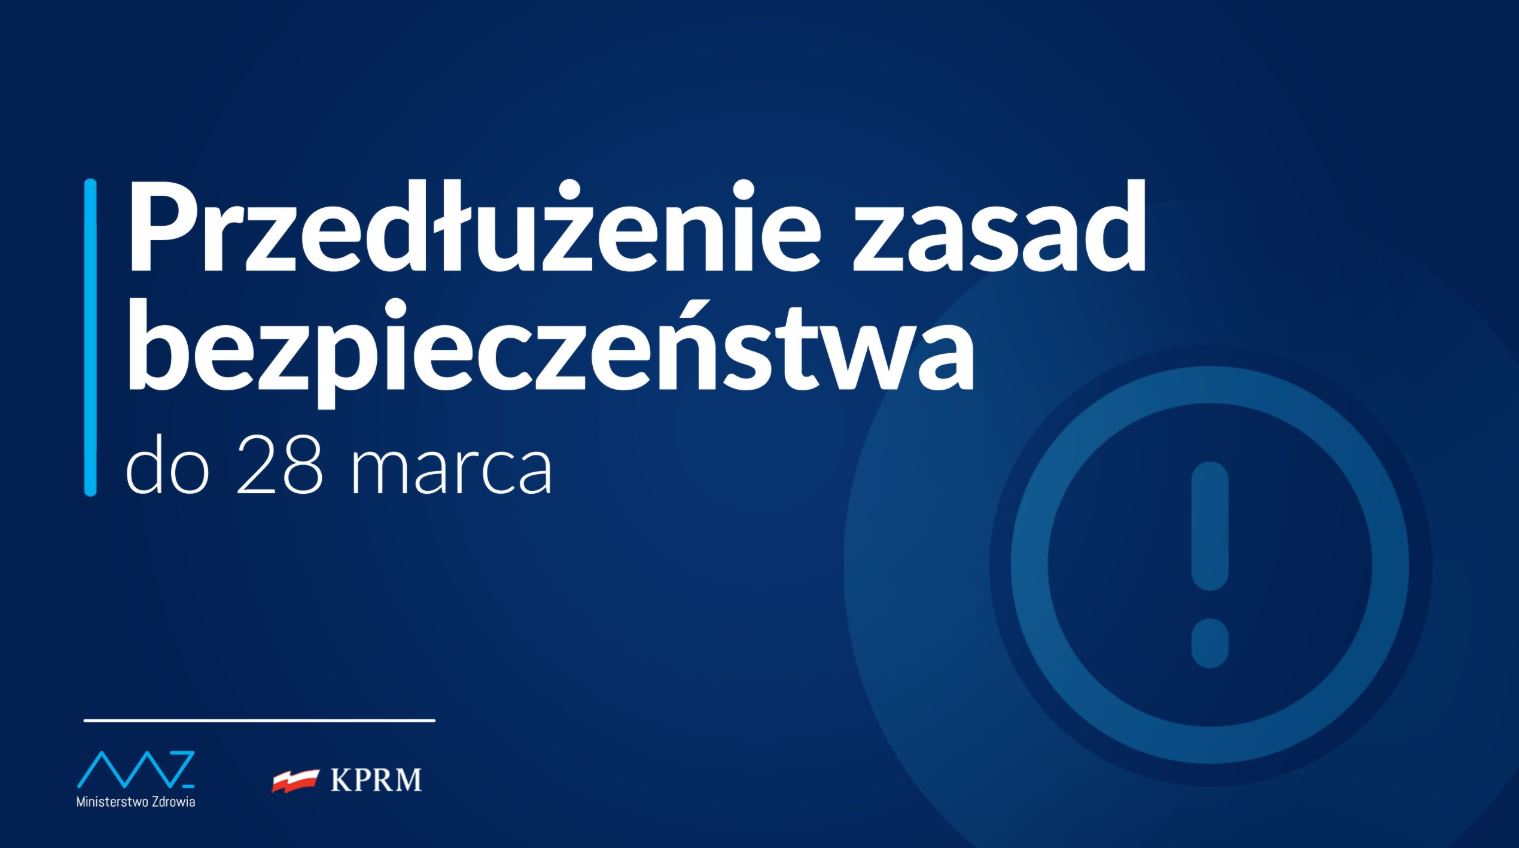 Środki ostrożności podczas epidemii Covid-19 w Polsce od 13 marca 